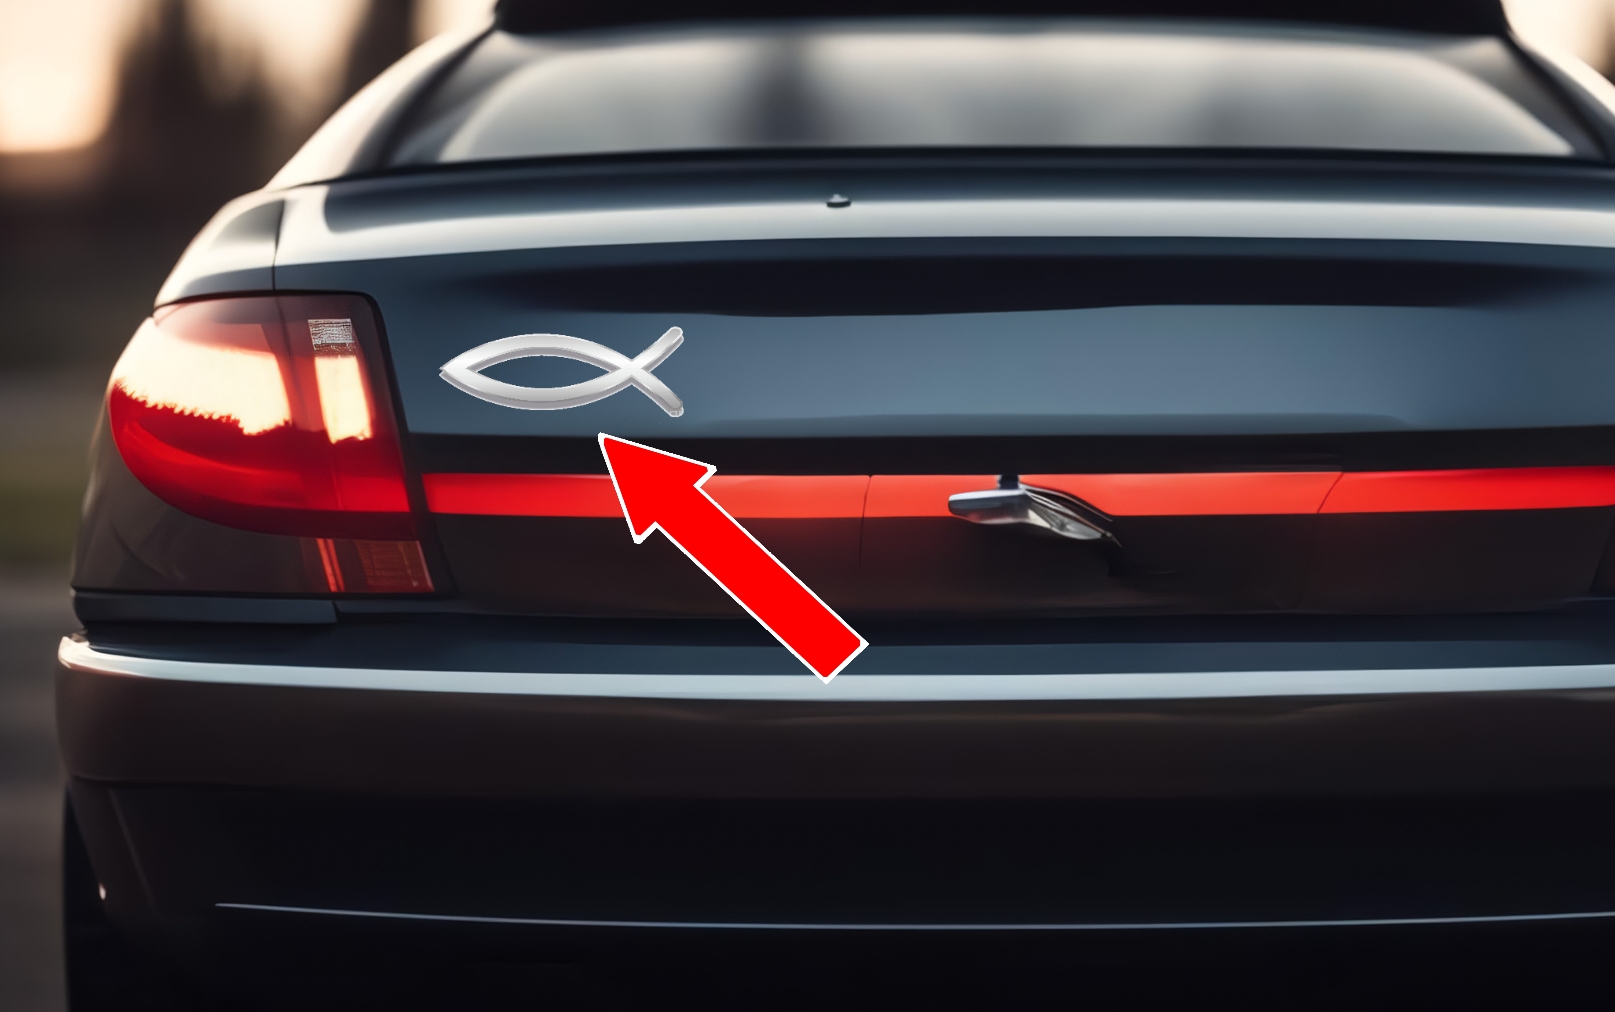 Что означает наклейка в виде символа рыбы, которую часто можно увидеть на крышке багажника или заднем стекле автомобиля / Автомобили, транспорт и аксессуары / iXBT Live